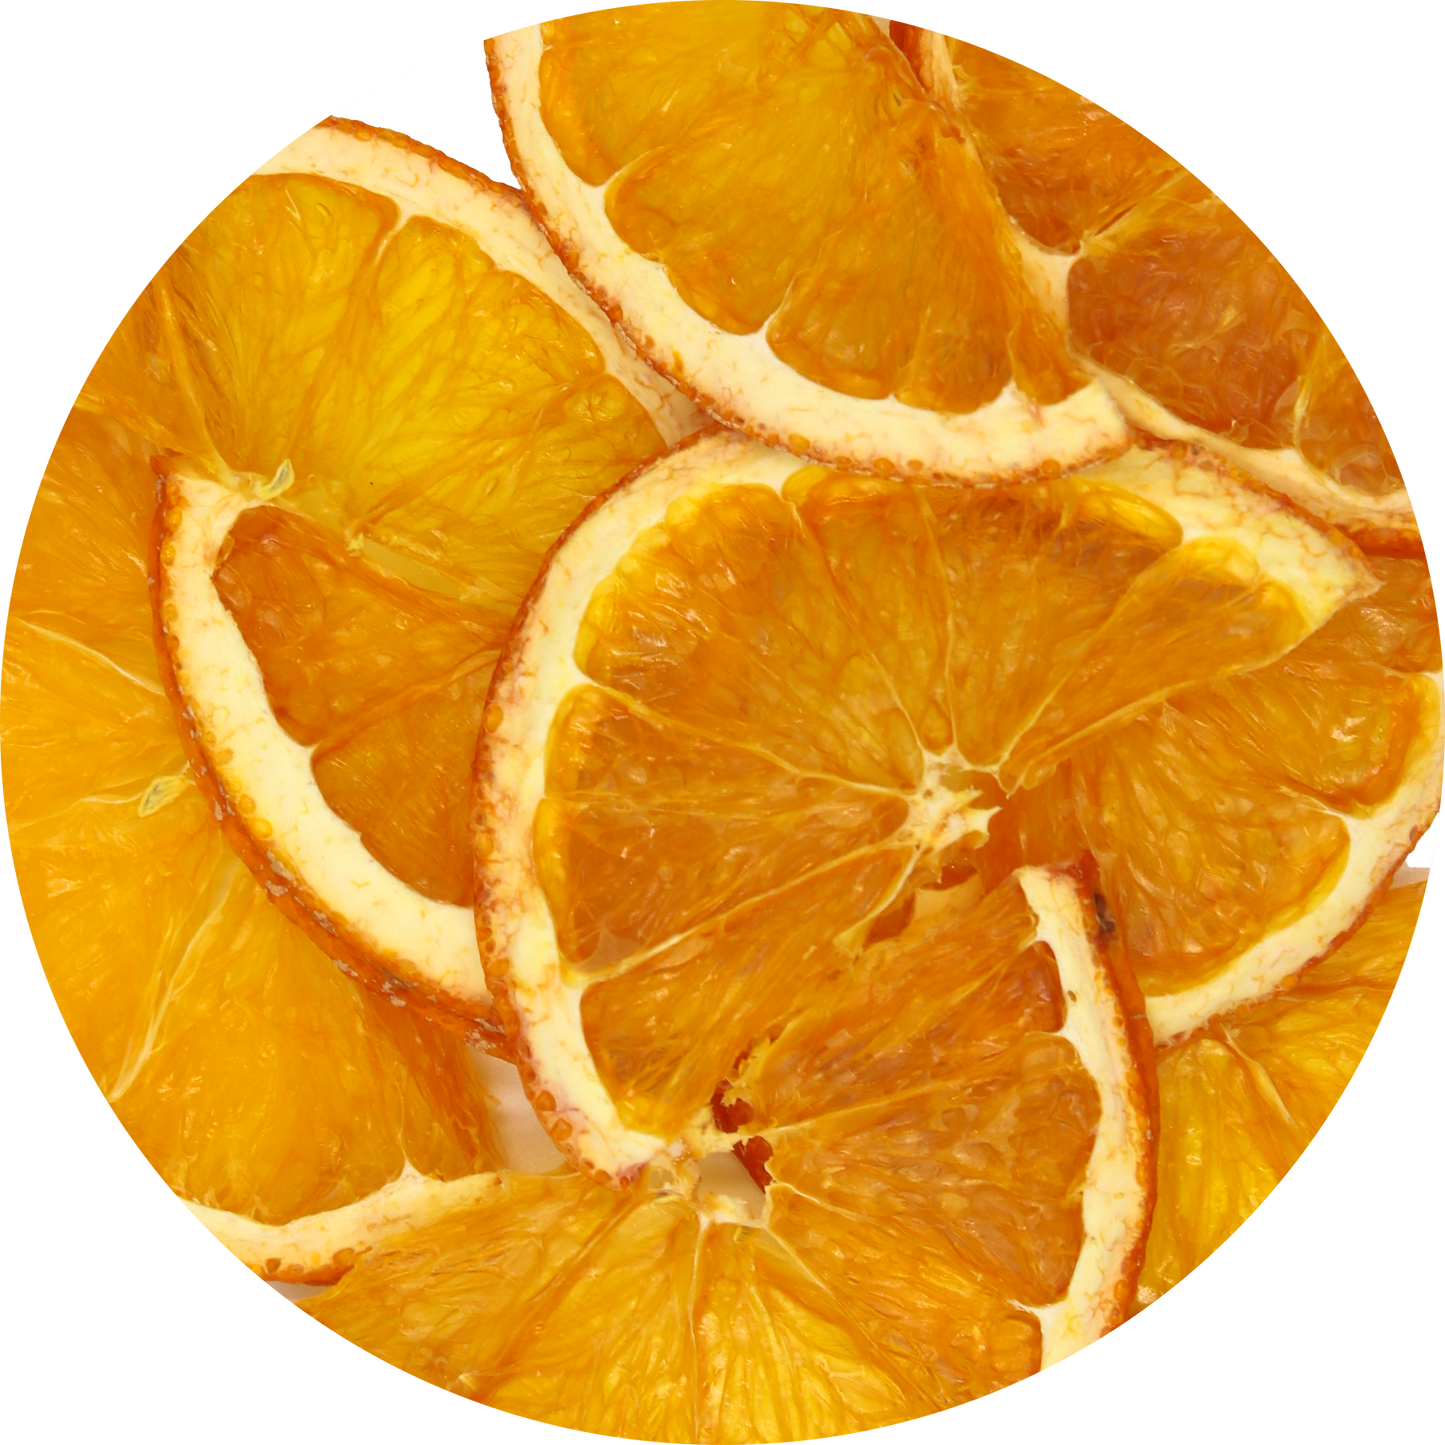 Oranges séchées